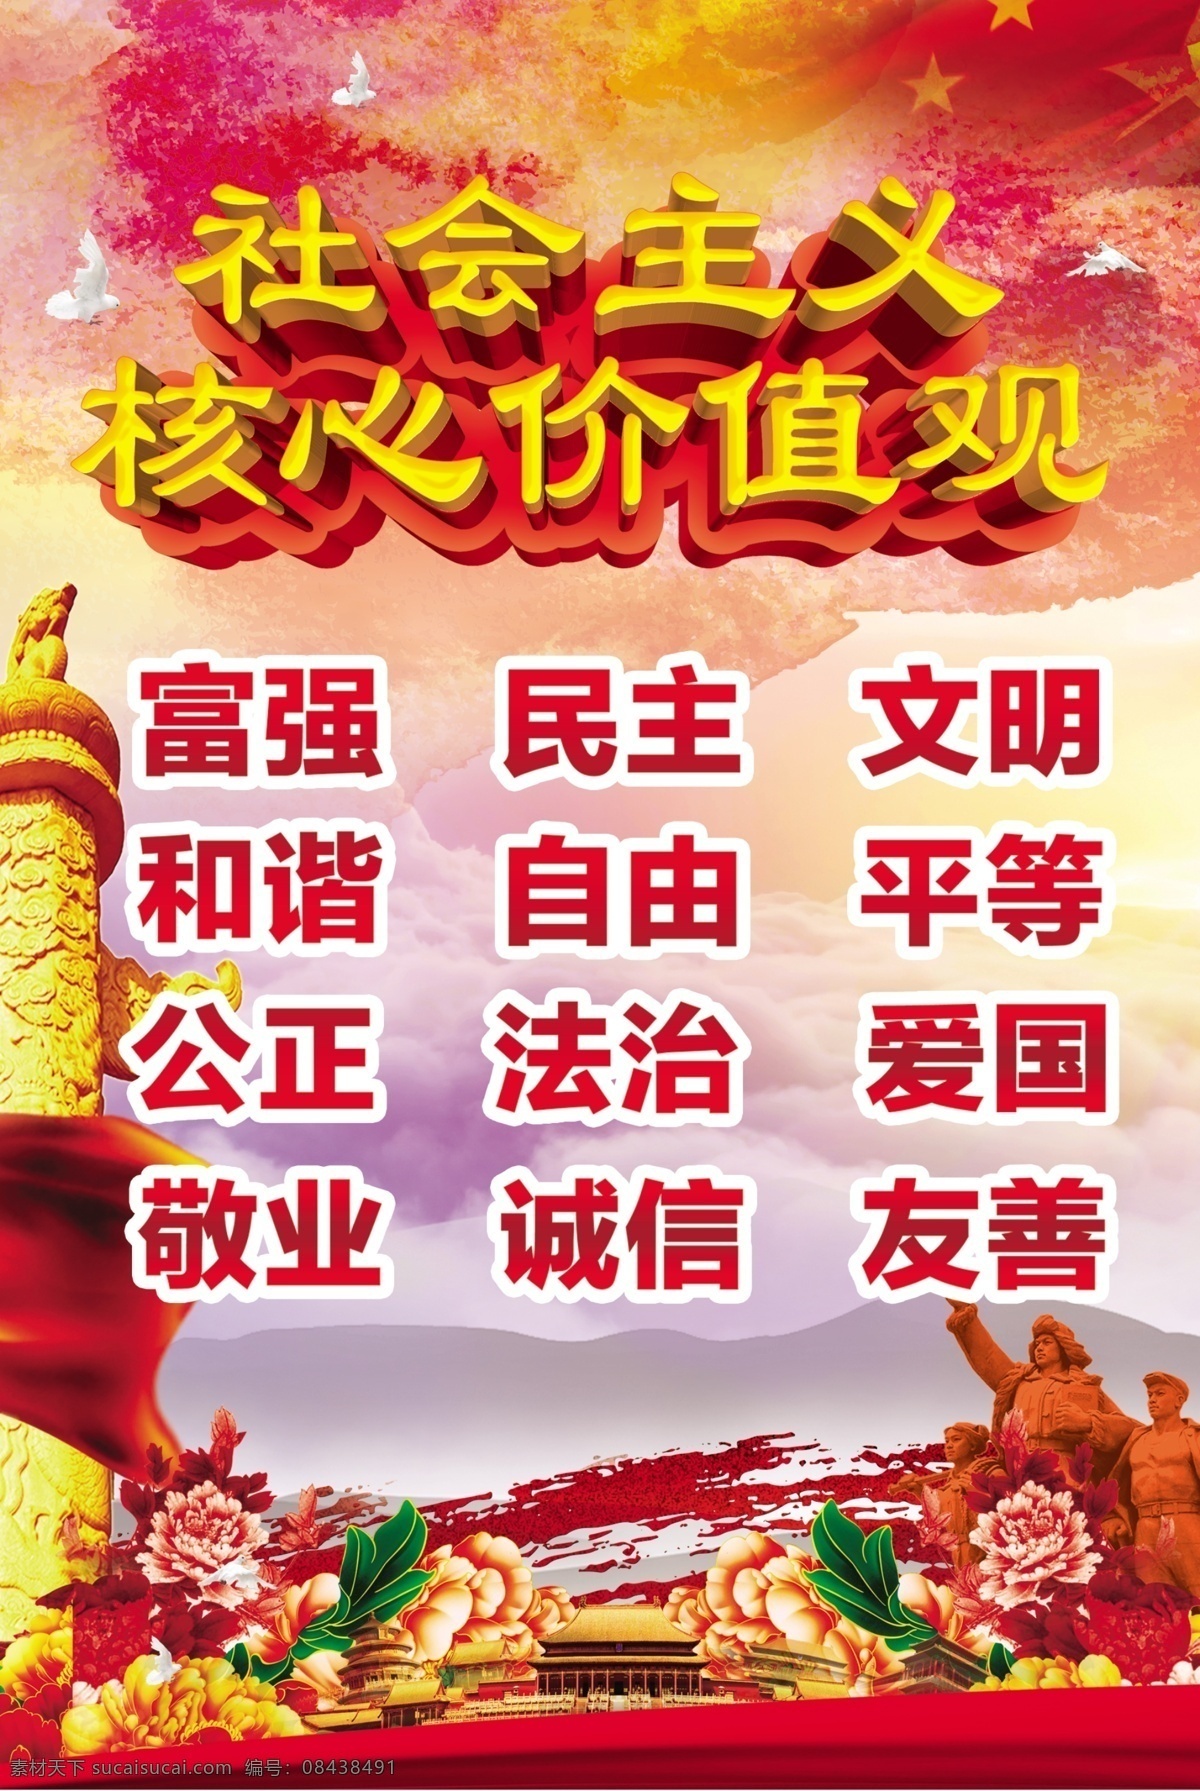 社会主义 核心 价值观 核心价值观 红色 庆祝 华表 中国红 五星红旗